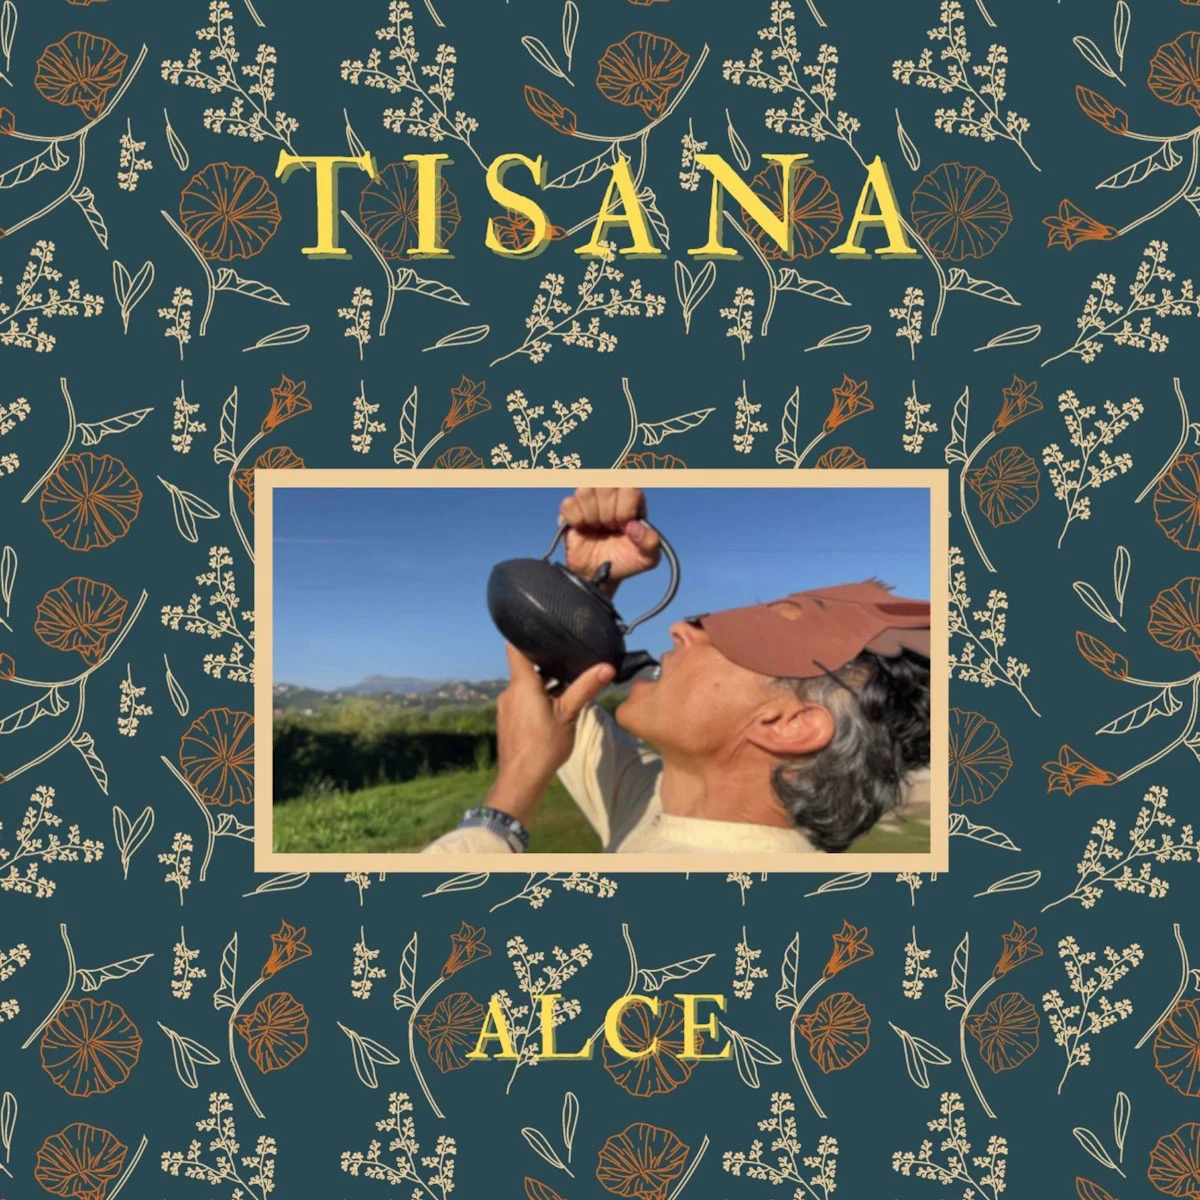 <strong> AlCe: venerdì 5 gennaio esce in radio “TISANA” il nuovo singolo</strong>